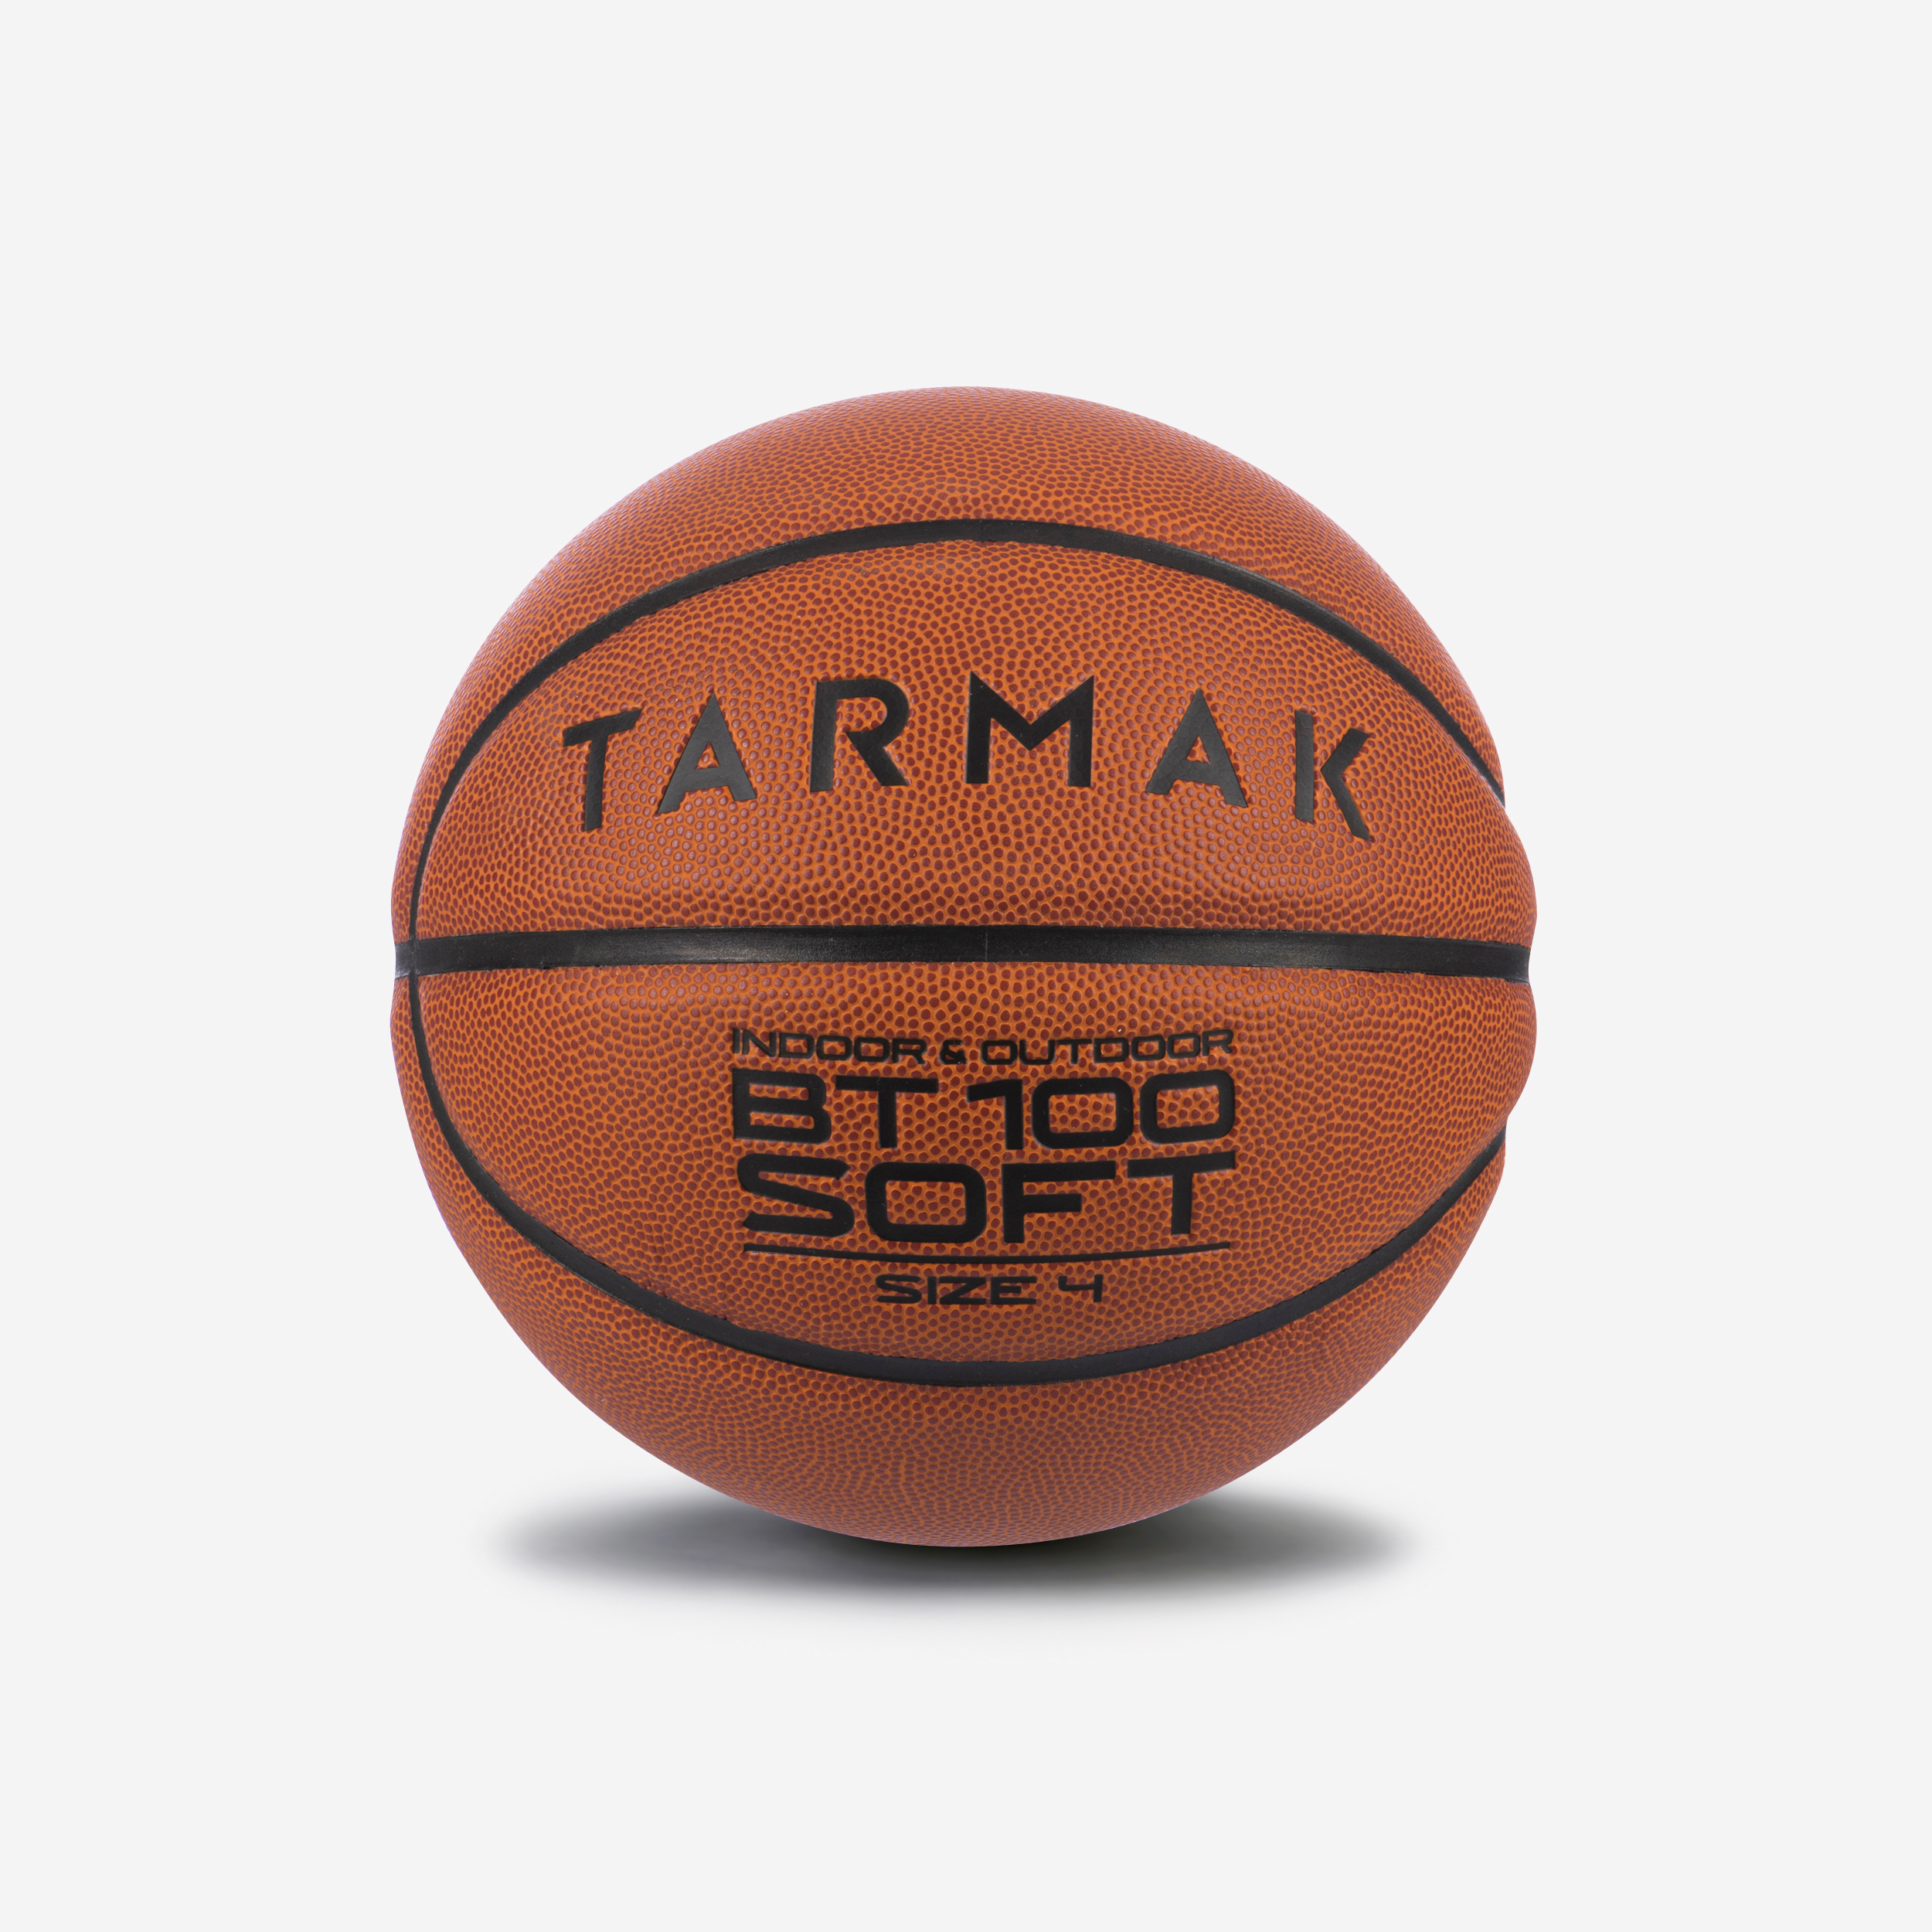 Le ballon de basket qu'il te faut pour l'hiver !🏀 Découvres la